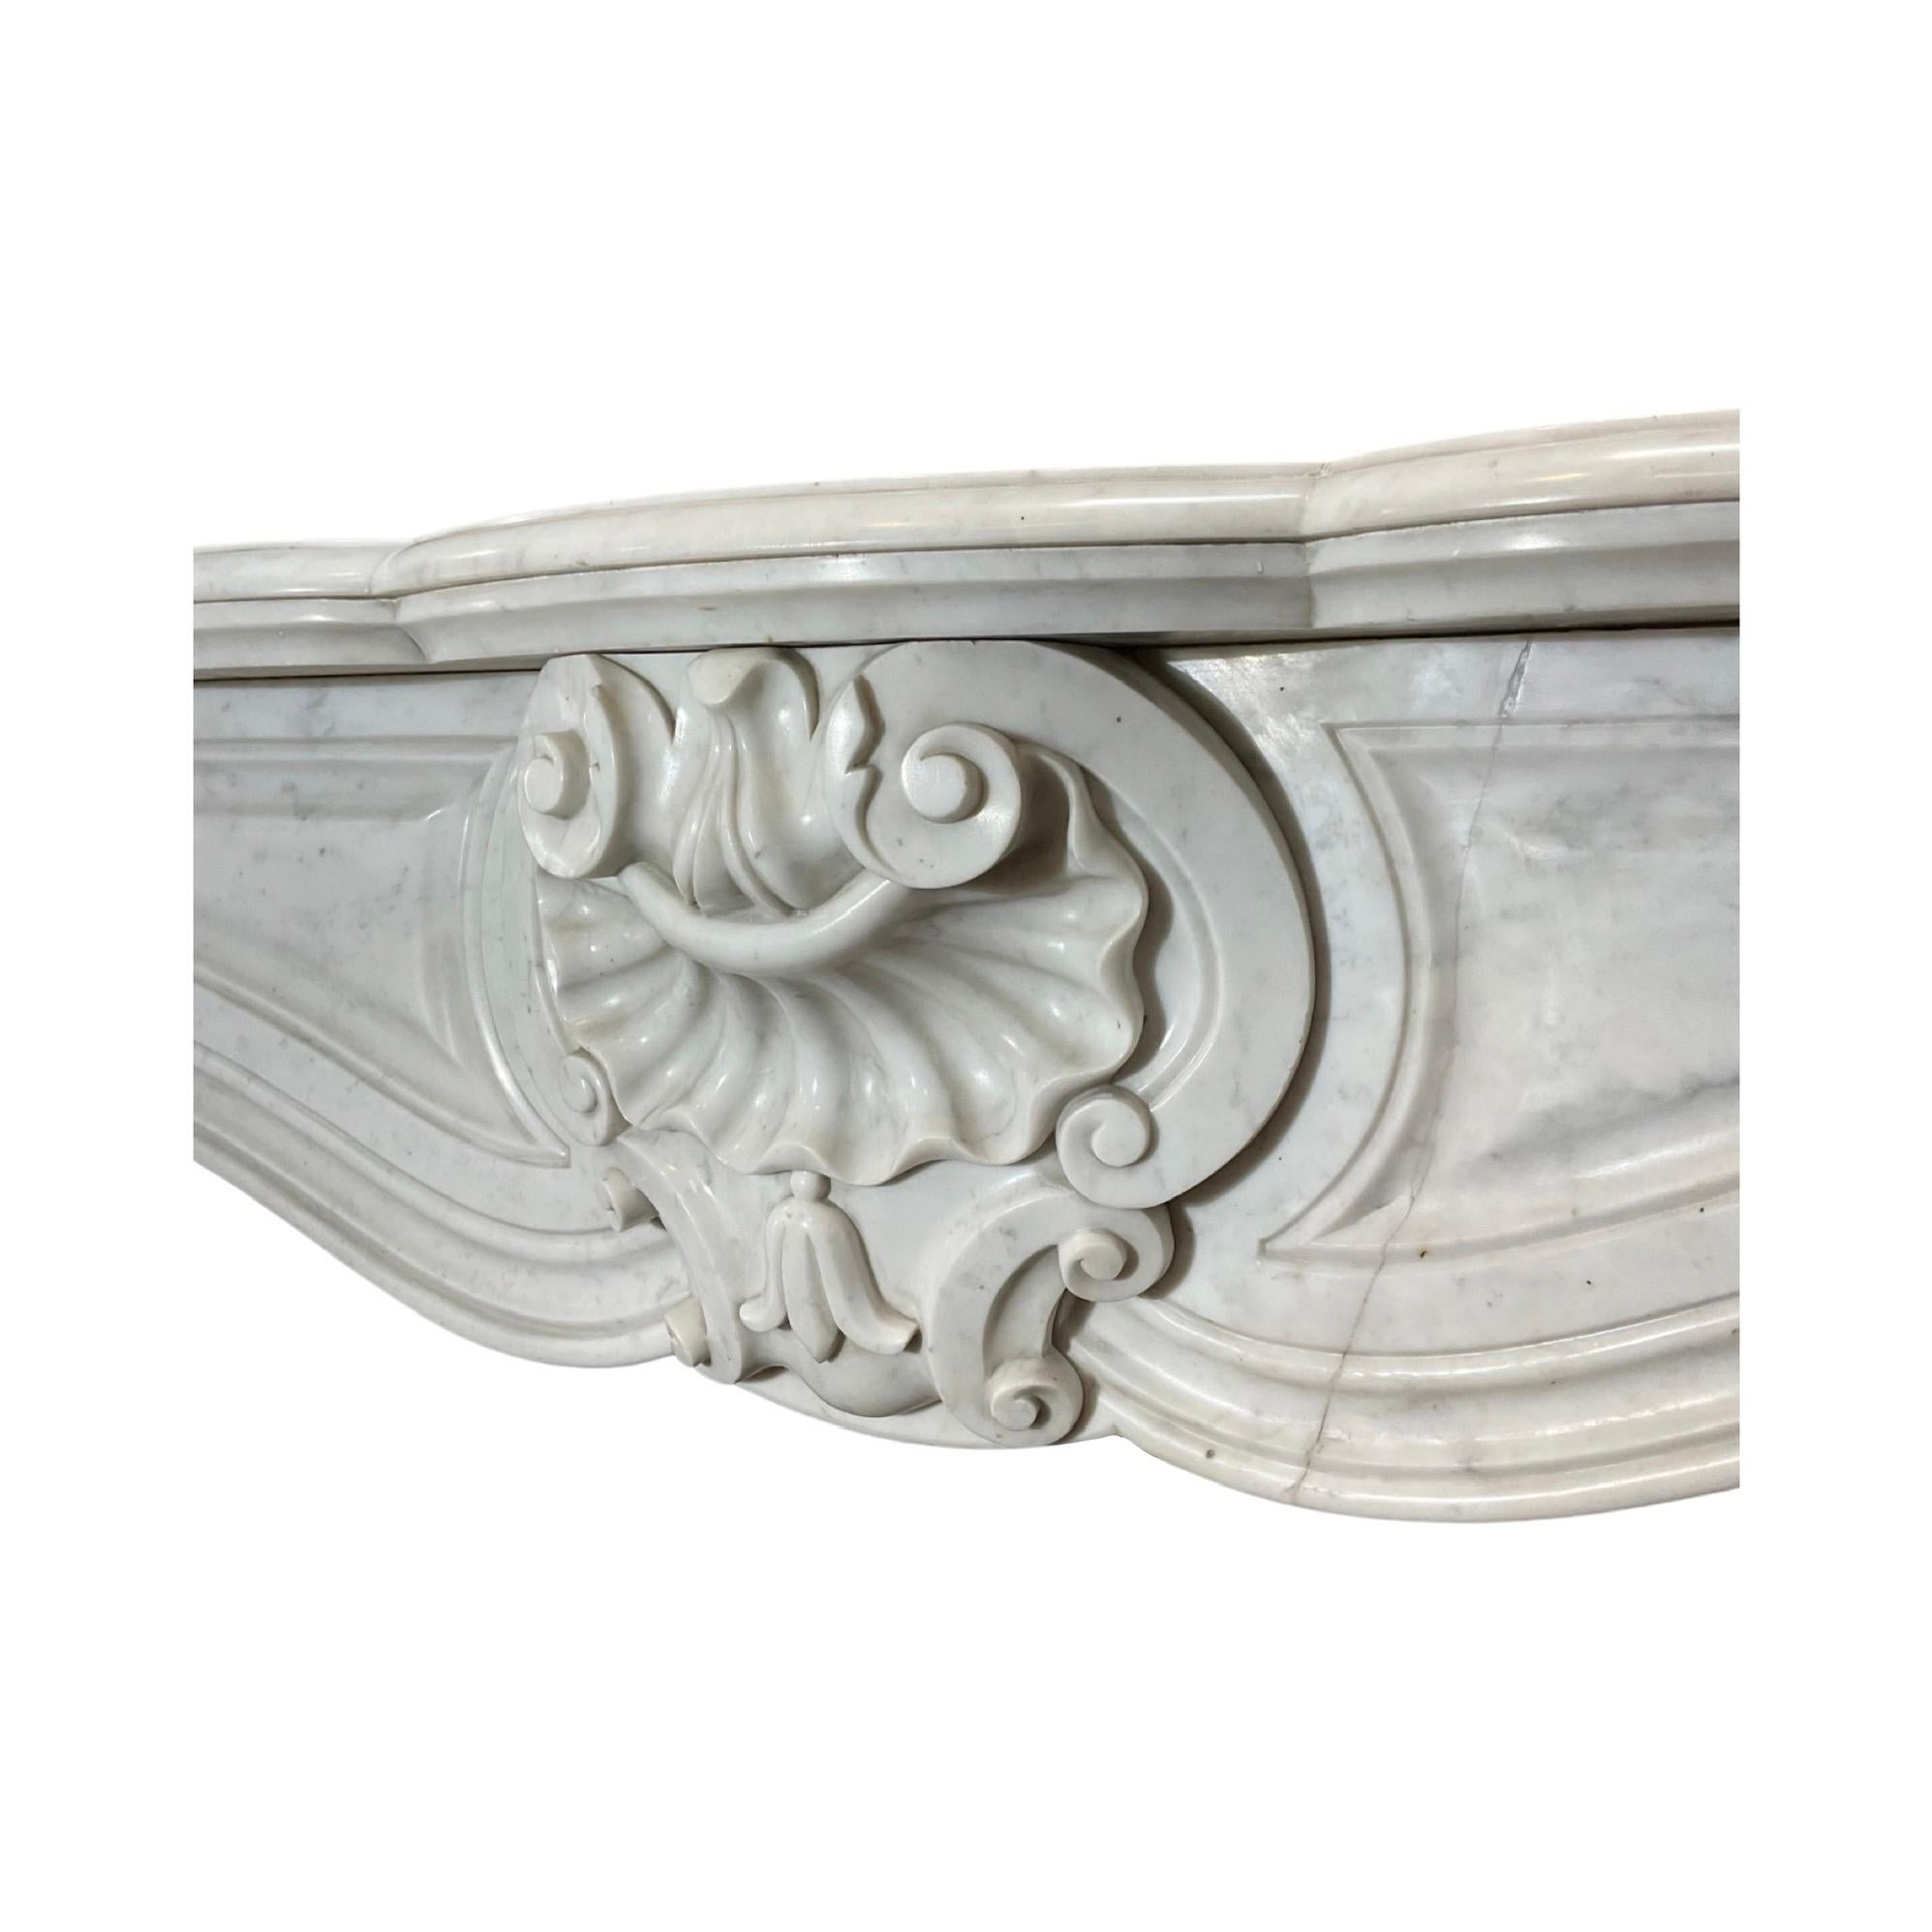 Dieser Kaminsims aus französischem Carrara-Marmor aus dem 18. Jahrhundert weist Schnitzereien im Stil von Louis XVI auf, die ihn klassisch und zeitlos machen. Der elegante Marmor wird jeden Raum mit seiner zeitlosen Schönheit und Raffinesse